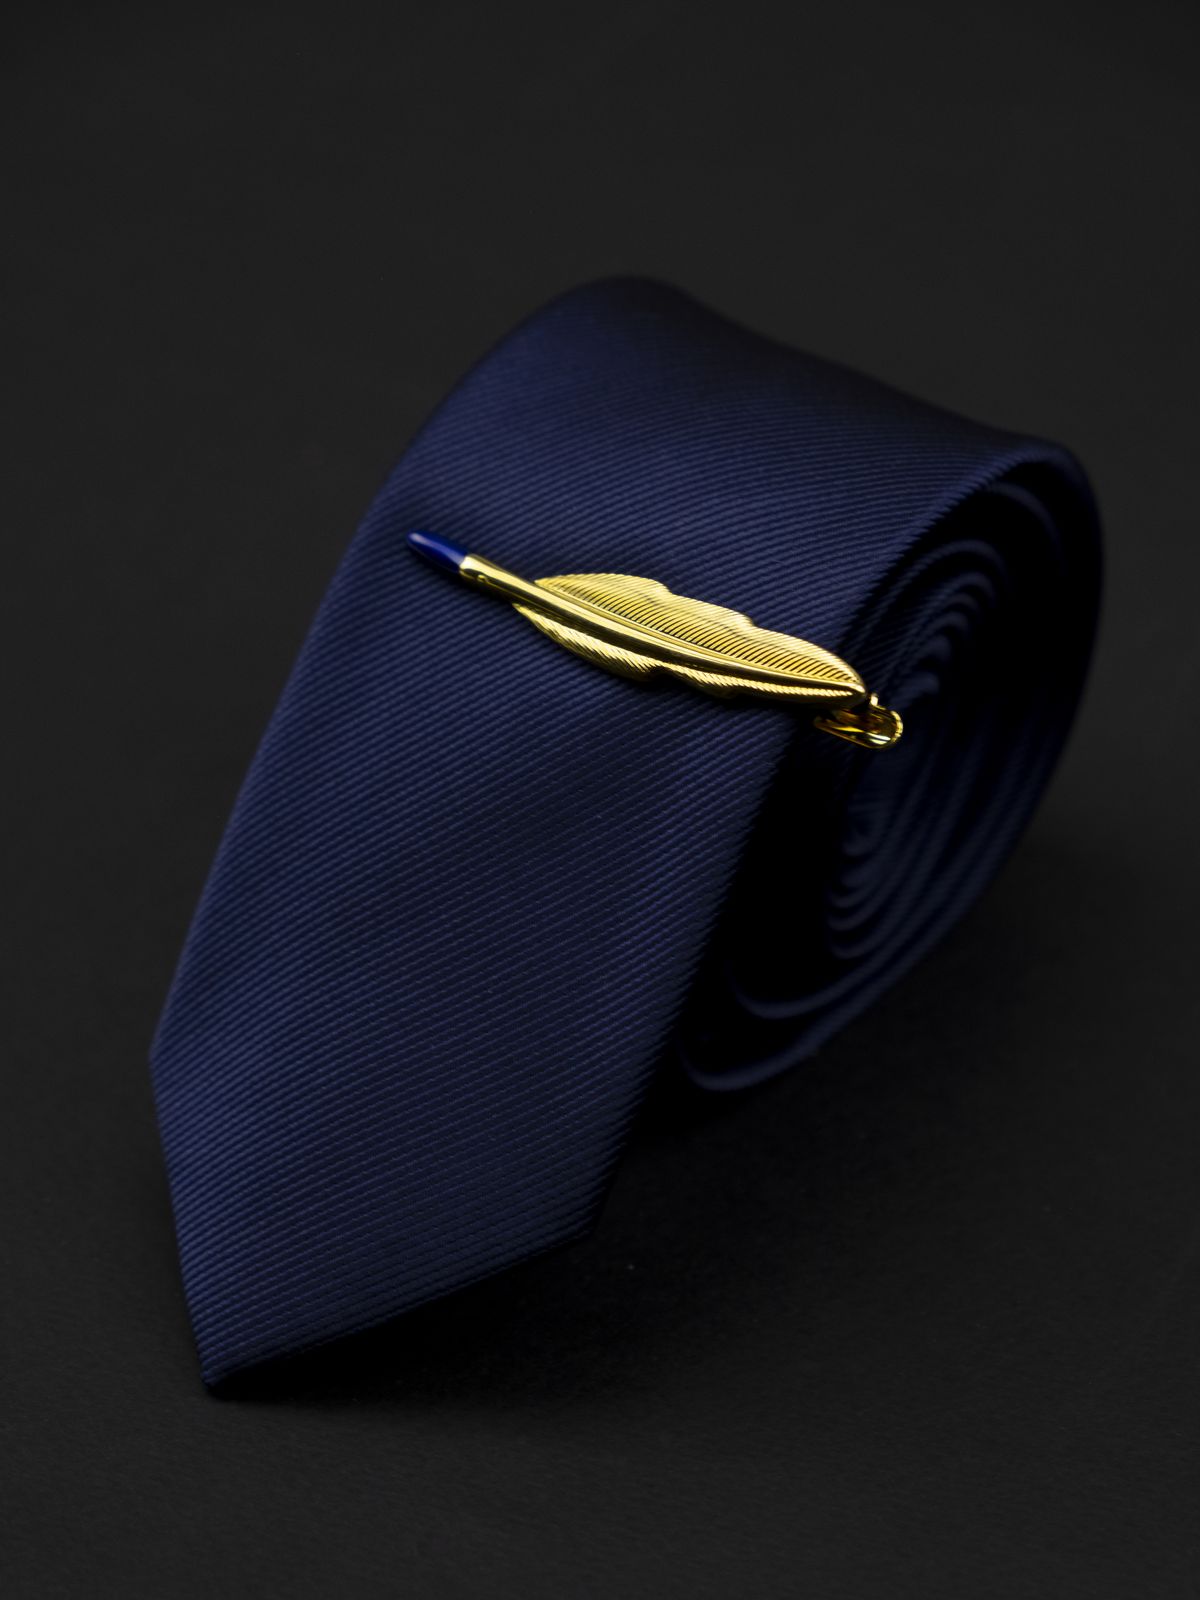 Зажим для галстука перо стило золотое купить. Состав: Ювелирная сталь 316L, Цвет: Золотой, Габариты: 52 мм х 10 мм, Вес: 22 гр.; 